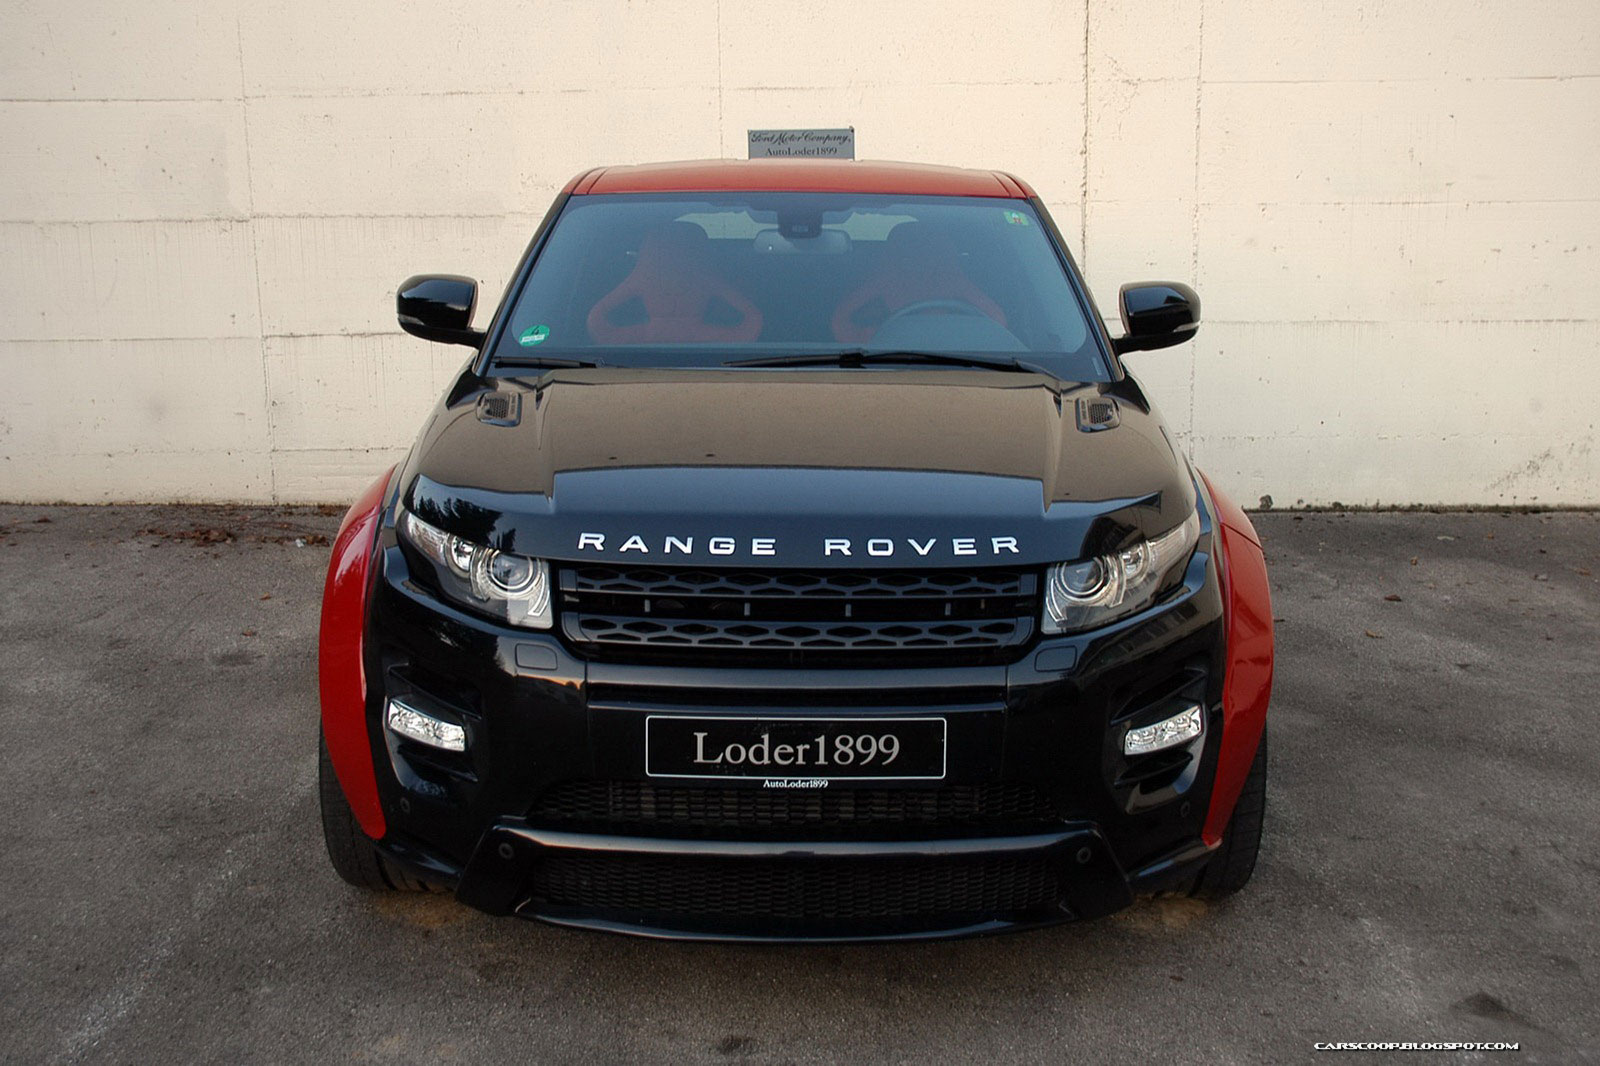 Range Rover Evoque prodělal několik vylepšení u Loder1899 3